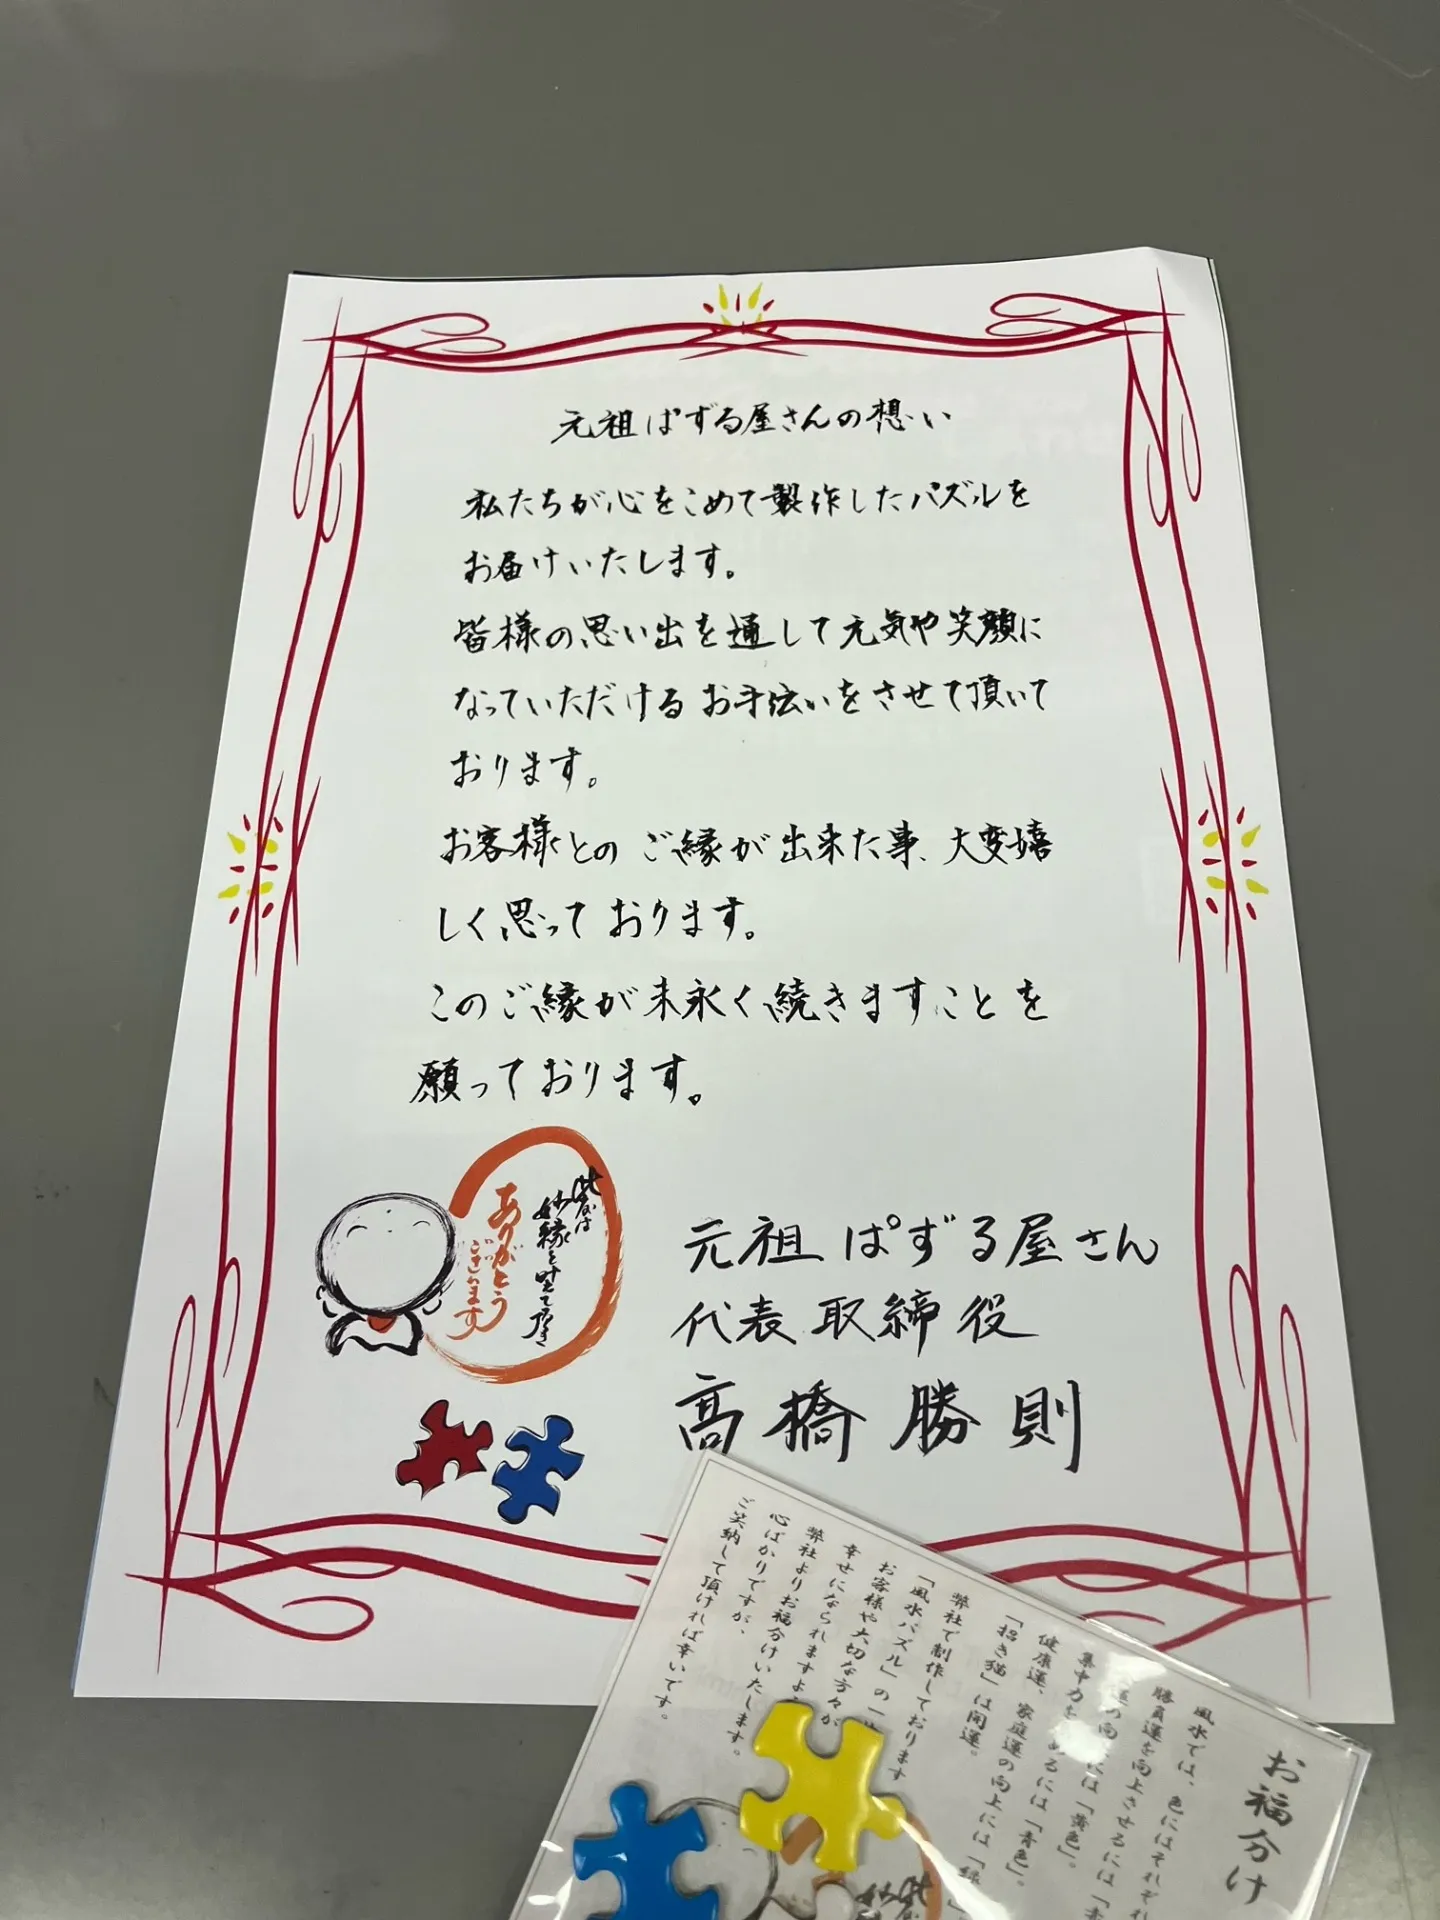 こんな時代だからこそ、手紙の重要性に気づかされる【マイナビlocus】の佐賀清和高校学校職場訪問で。